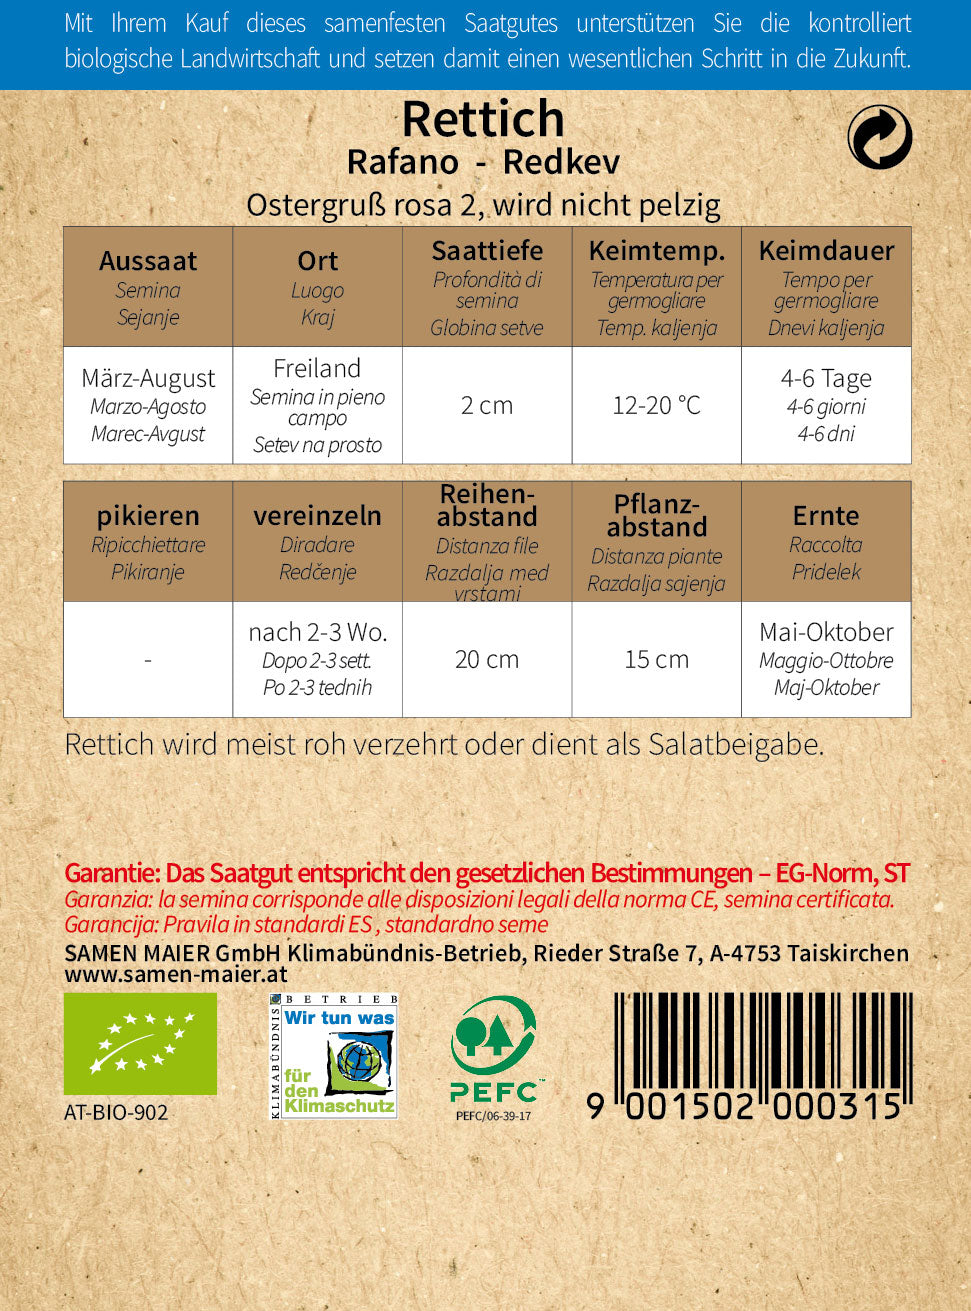 Rettich Ostergruß rosa 2 | BIO Rettichsamen von Samen Maier [MHD 12/2023]